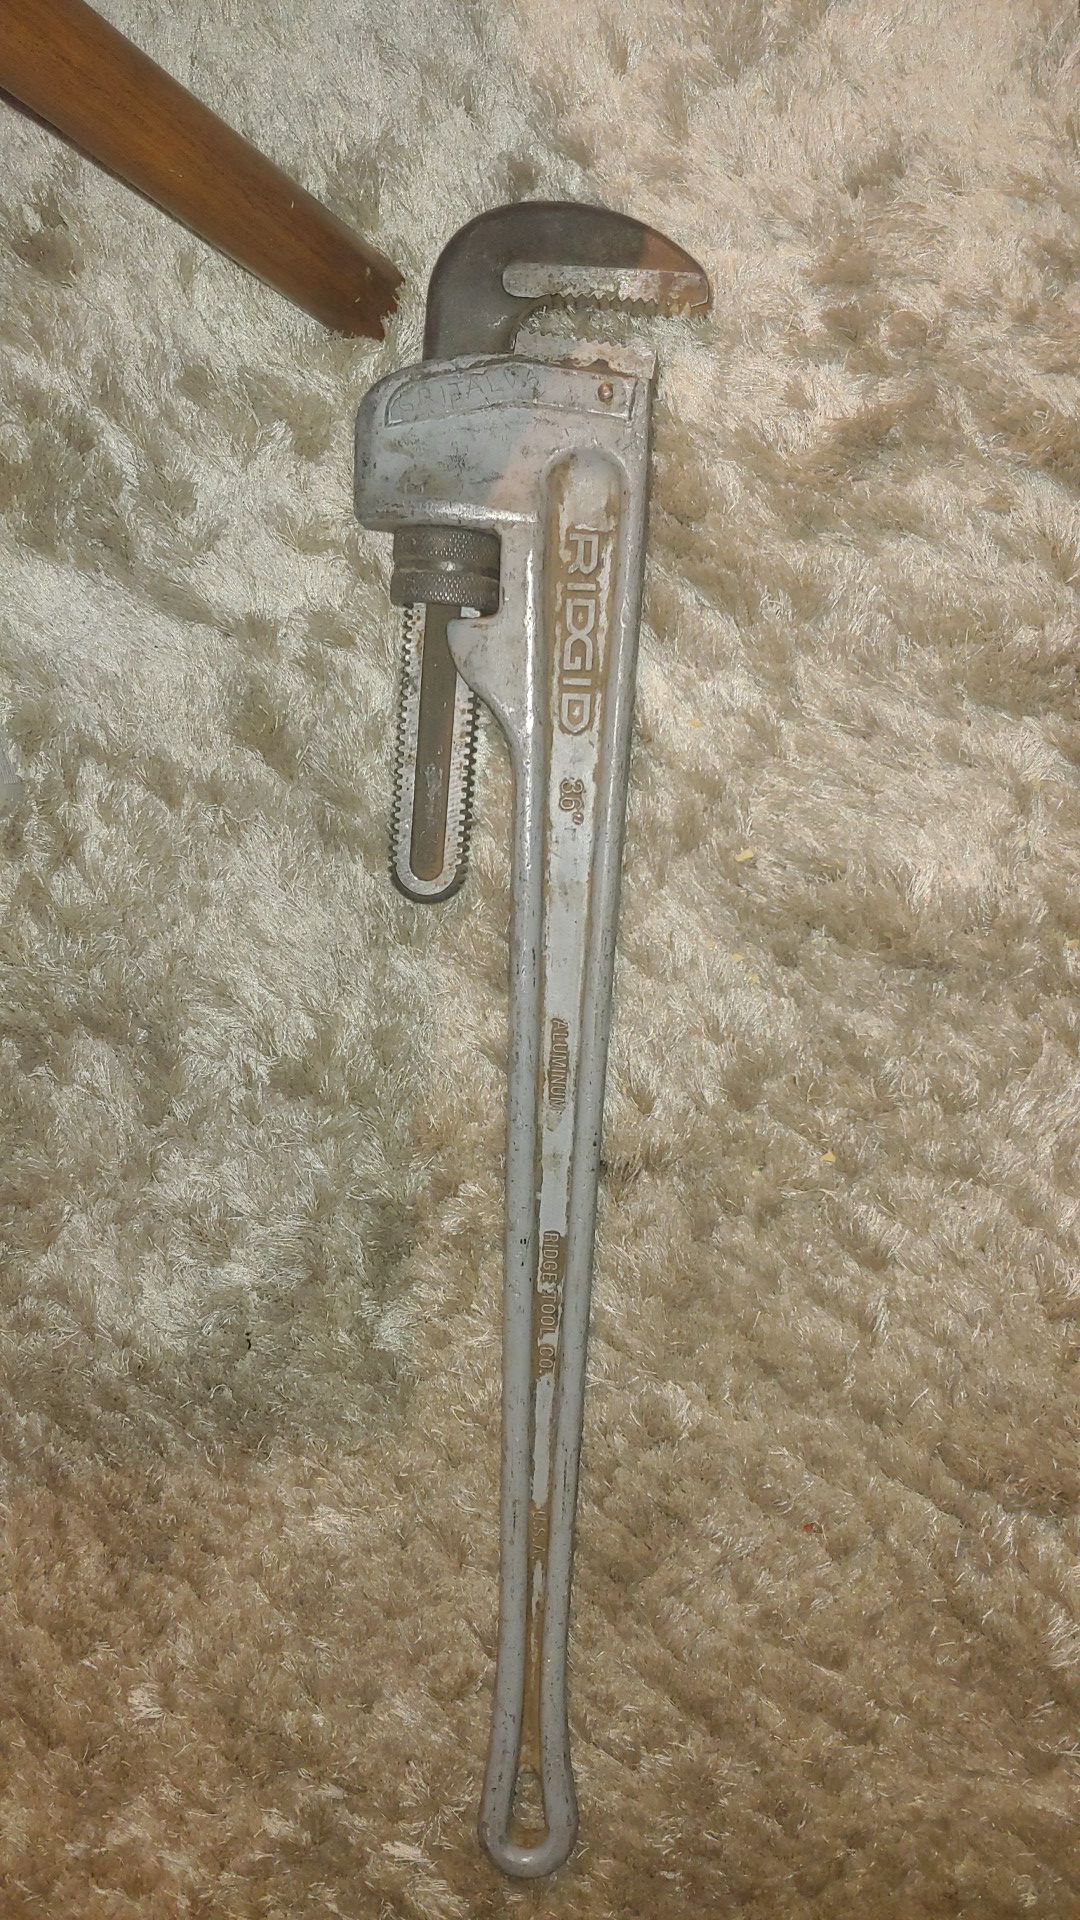 Rigid 36" aluminum pipe wrench